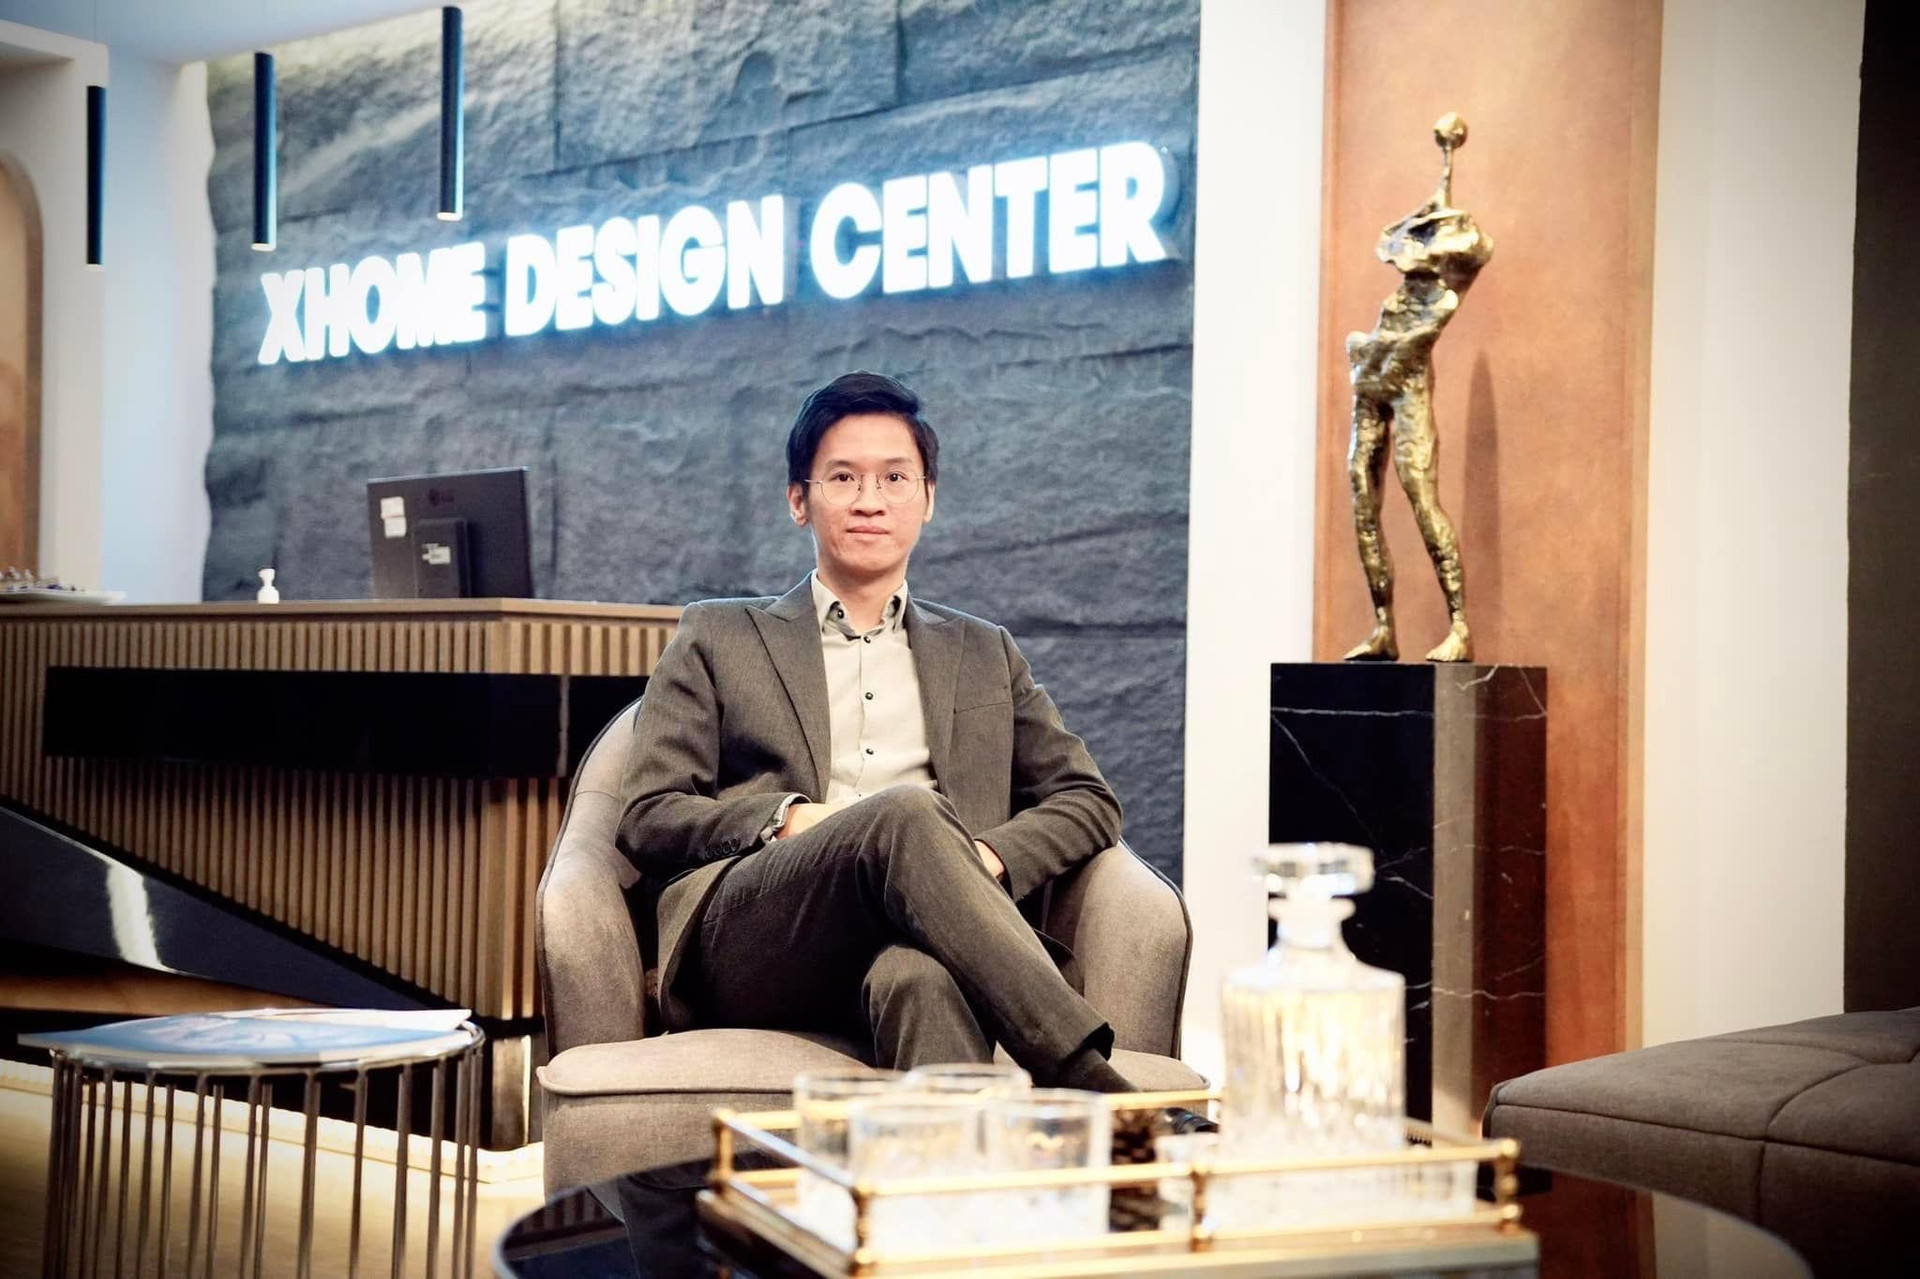 Founder & CEO XHOME Việt Nam 2 lần bán nhà để nuôi mộng kinh doanh: Trong khởi nghiệp, bản thân người đứng đầu phải ‘hão huyền’ - Ảnh 4.